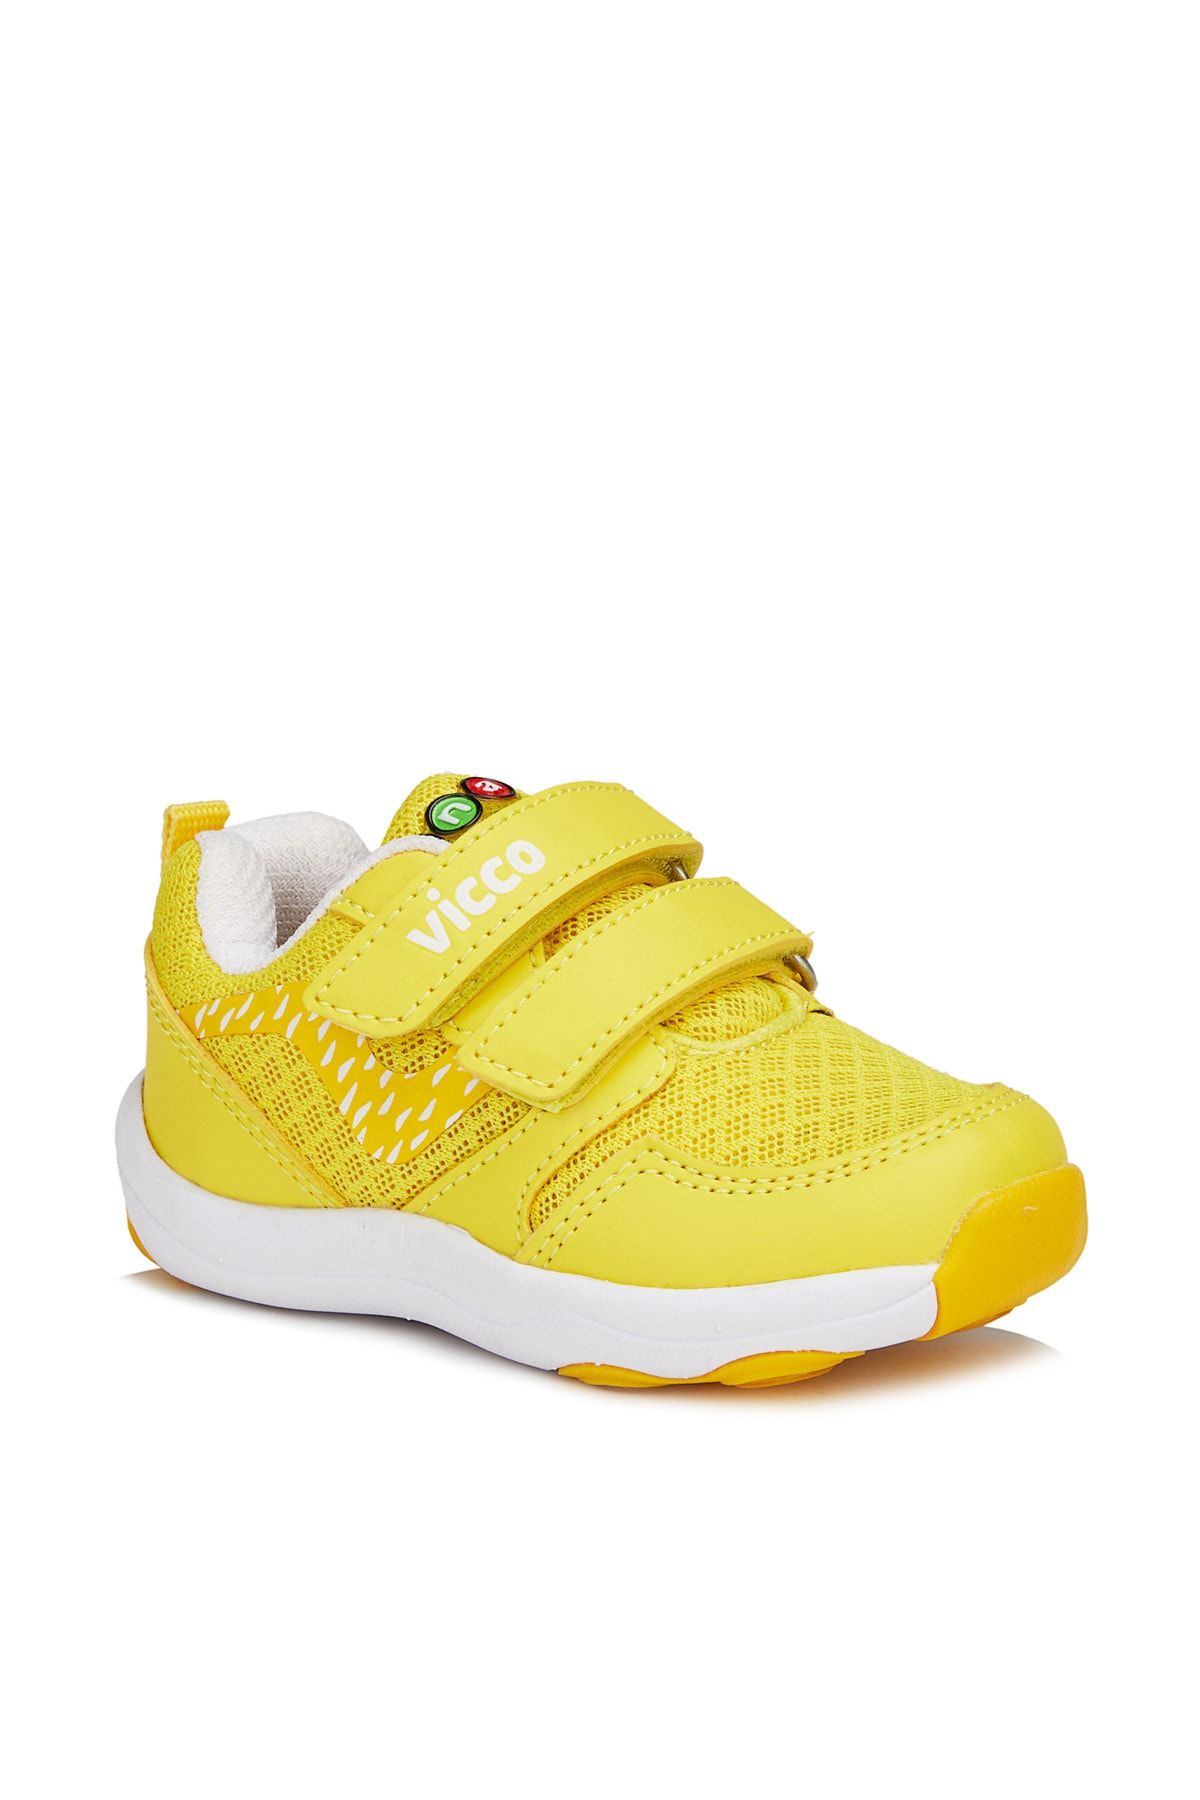 Vicco Dna Unisex Bebe Sarı Spor Ayakkabı